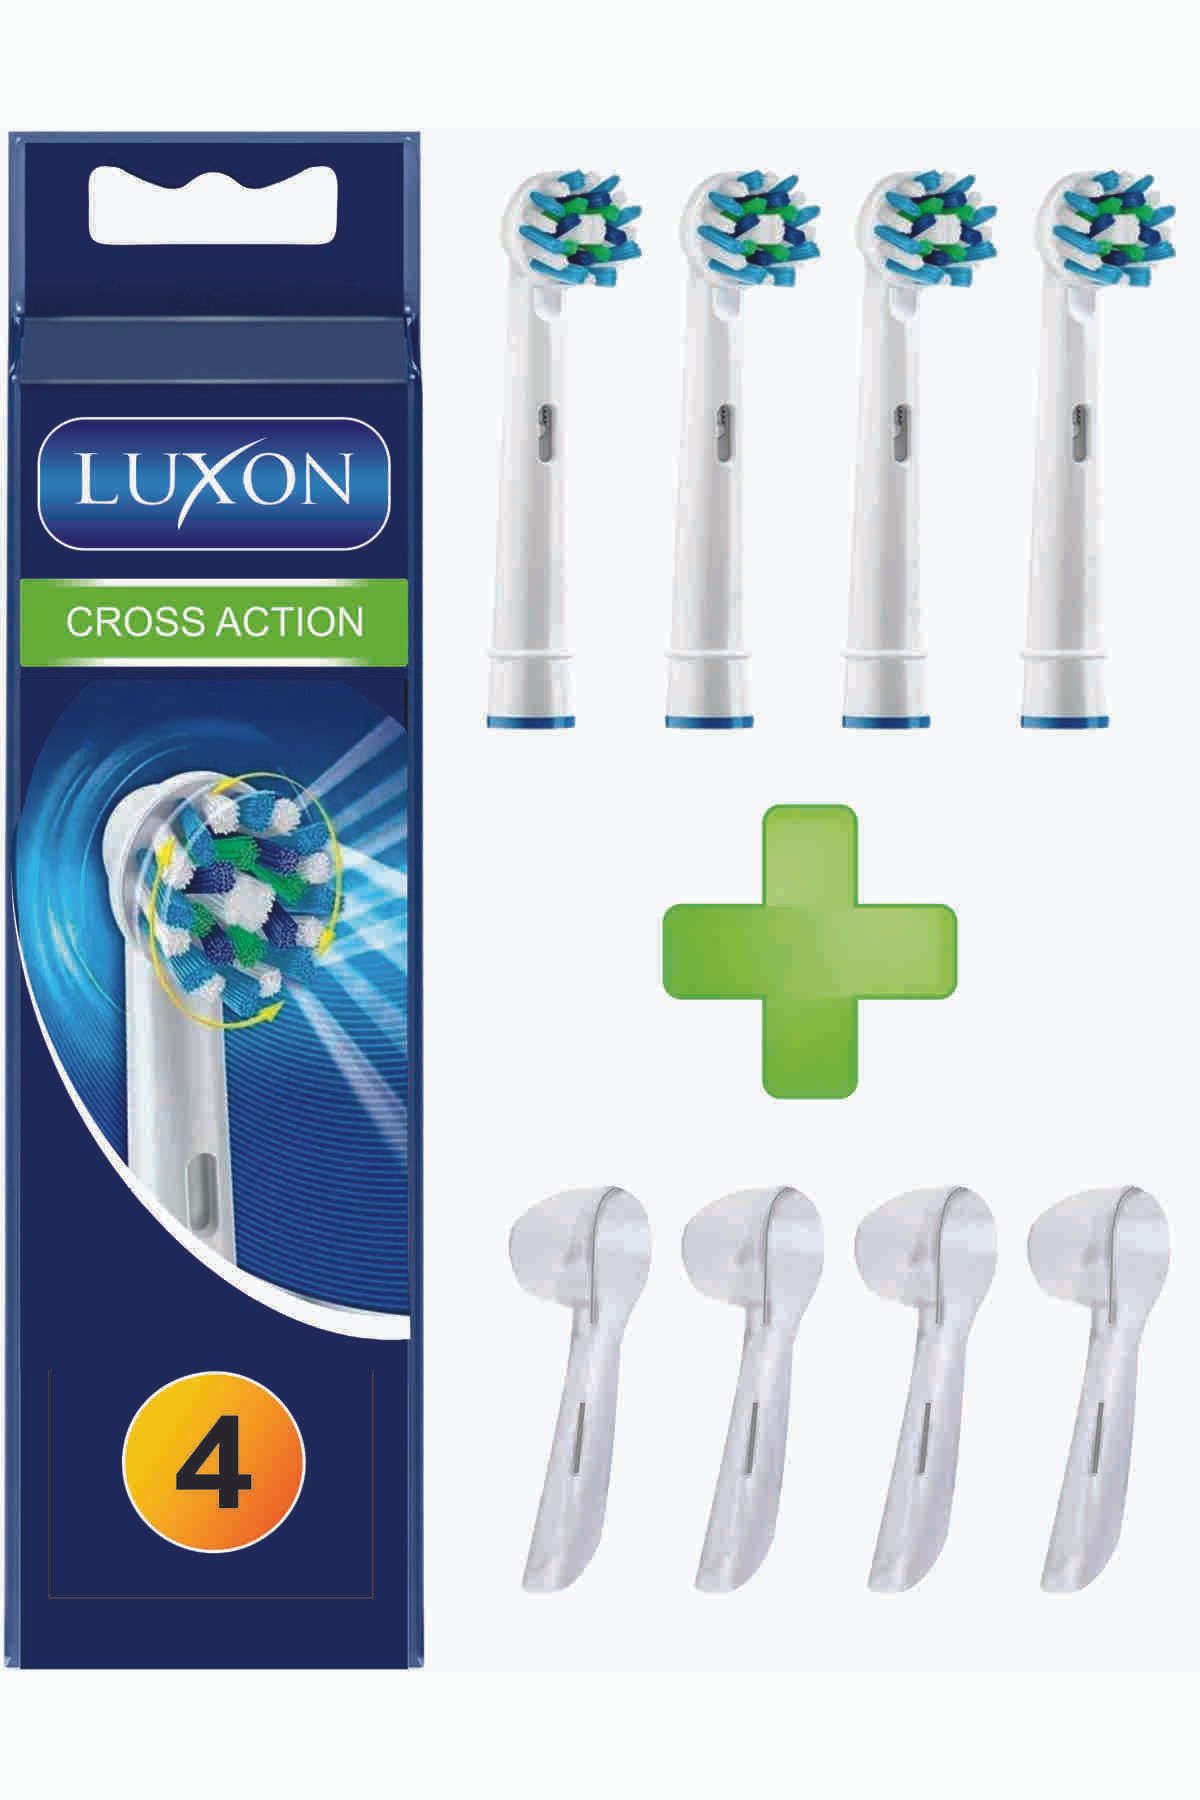 LUXON Oral-b Diş Fırçası Yedek Başlığı Uyumlu Cross Action 4 Adet Yedek Fırça 4 Adet Kapak